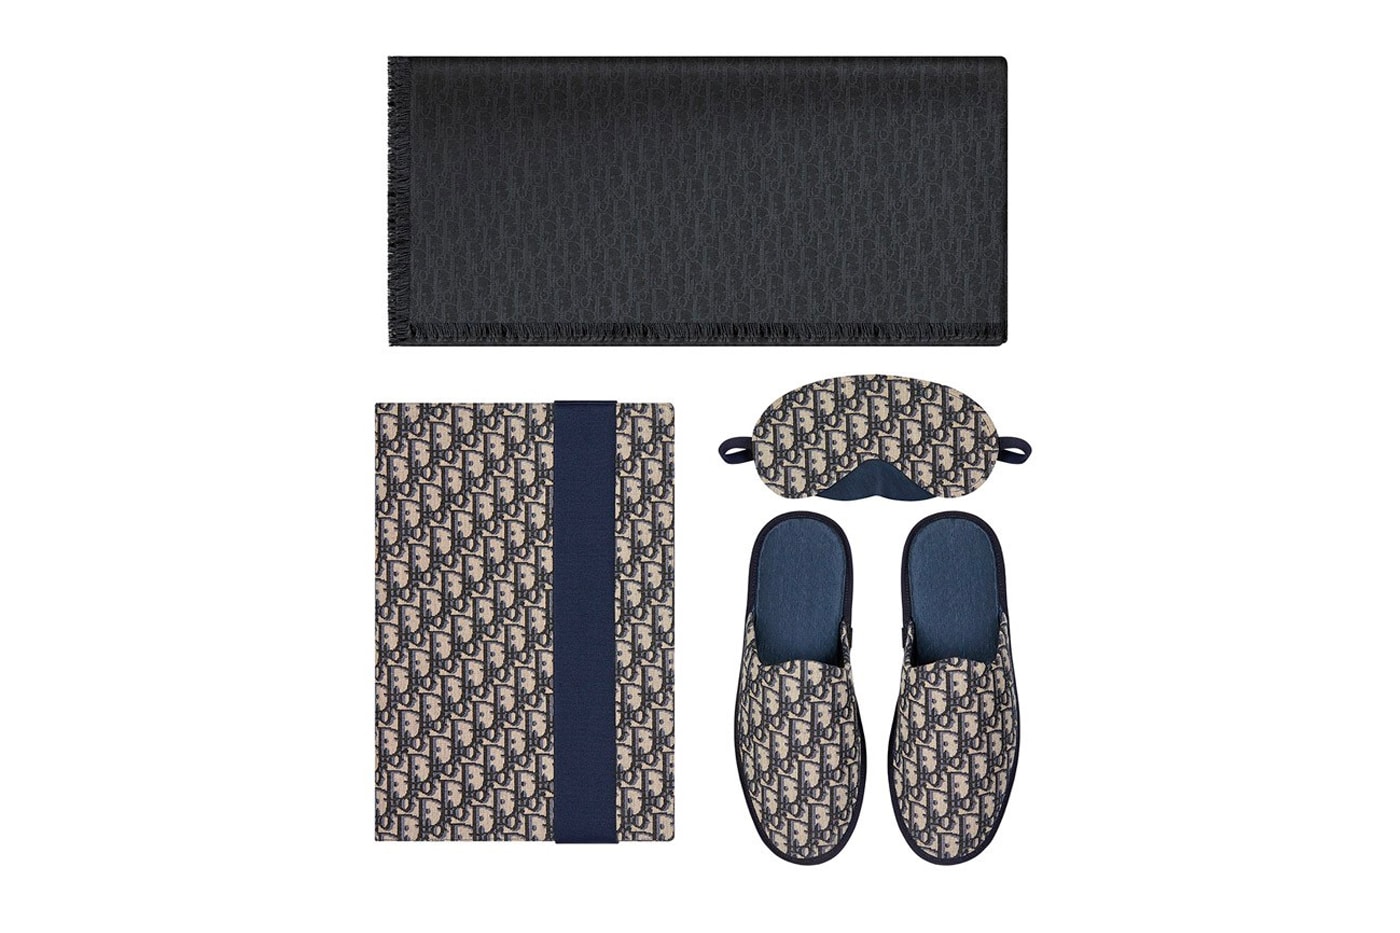 ディオール Dior Men First-Ever Homewear Kit Release Info Oblique Jacquard fashion slipper pouch eye mask stole navy blue black beige